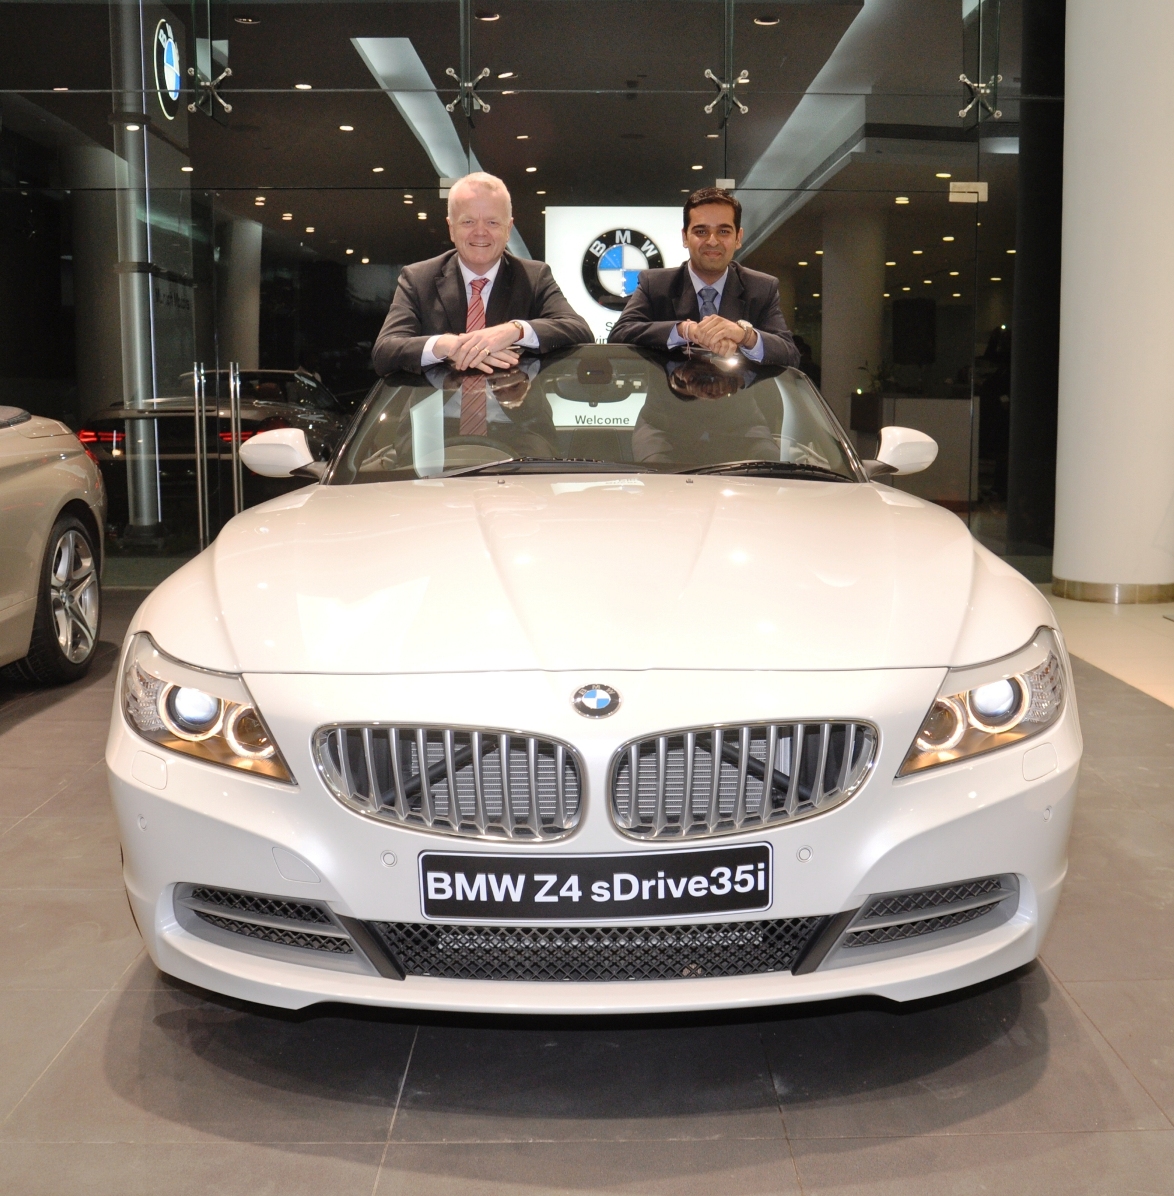 Mr. Philipp von Sahr President BMW Group India with Mr. Prashant Mandhan…